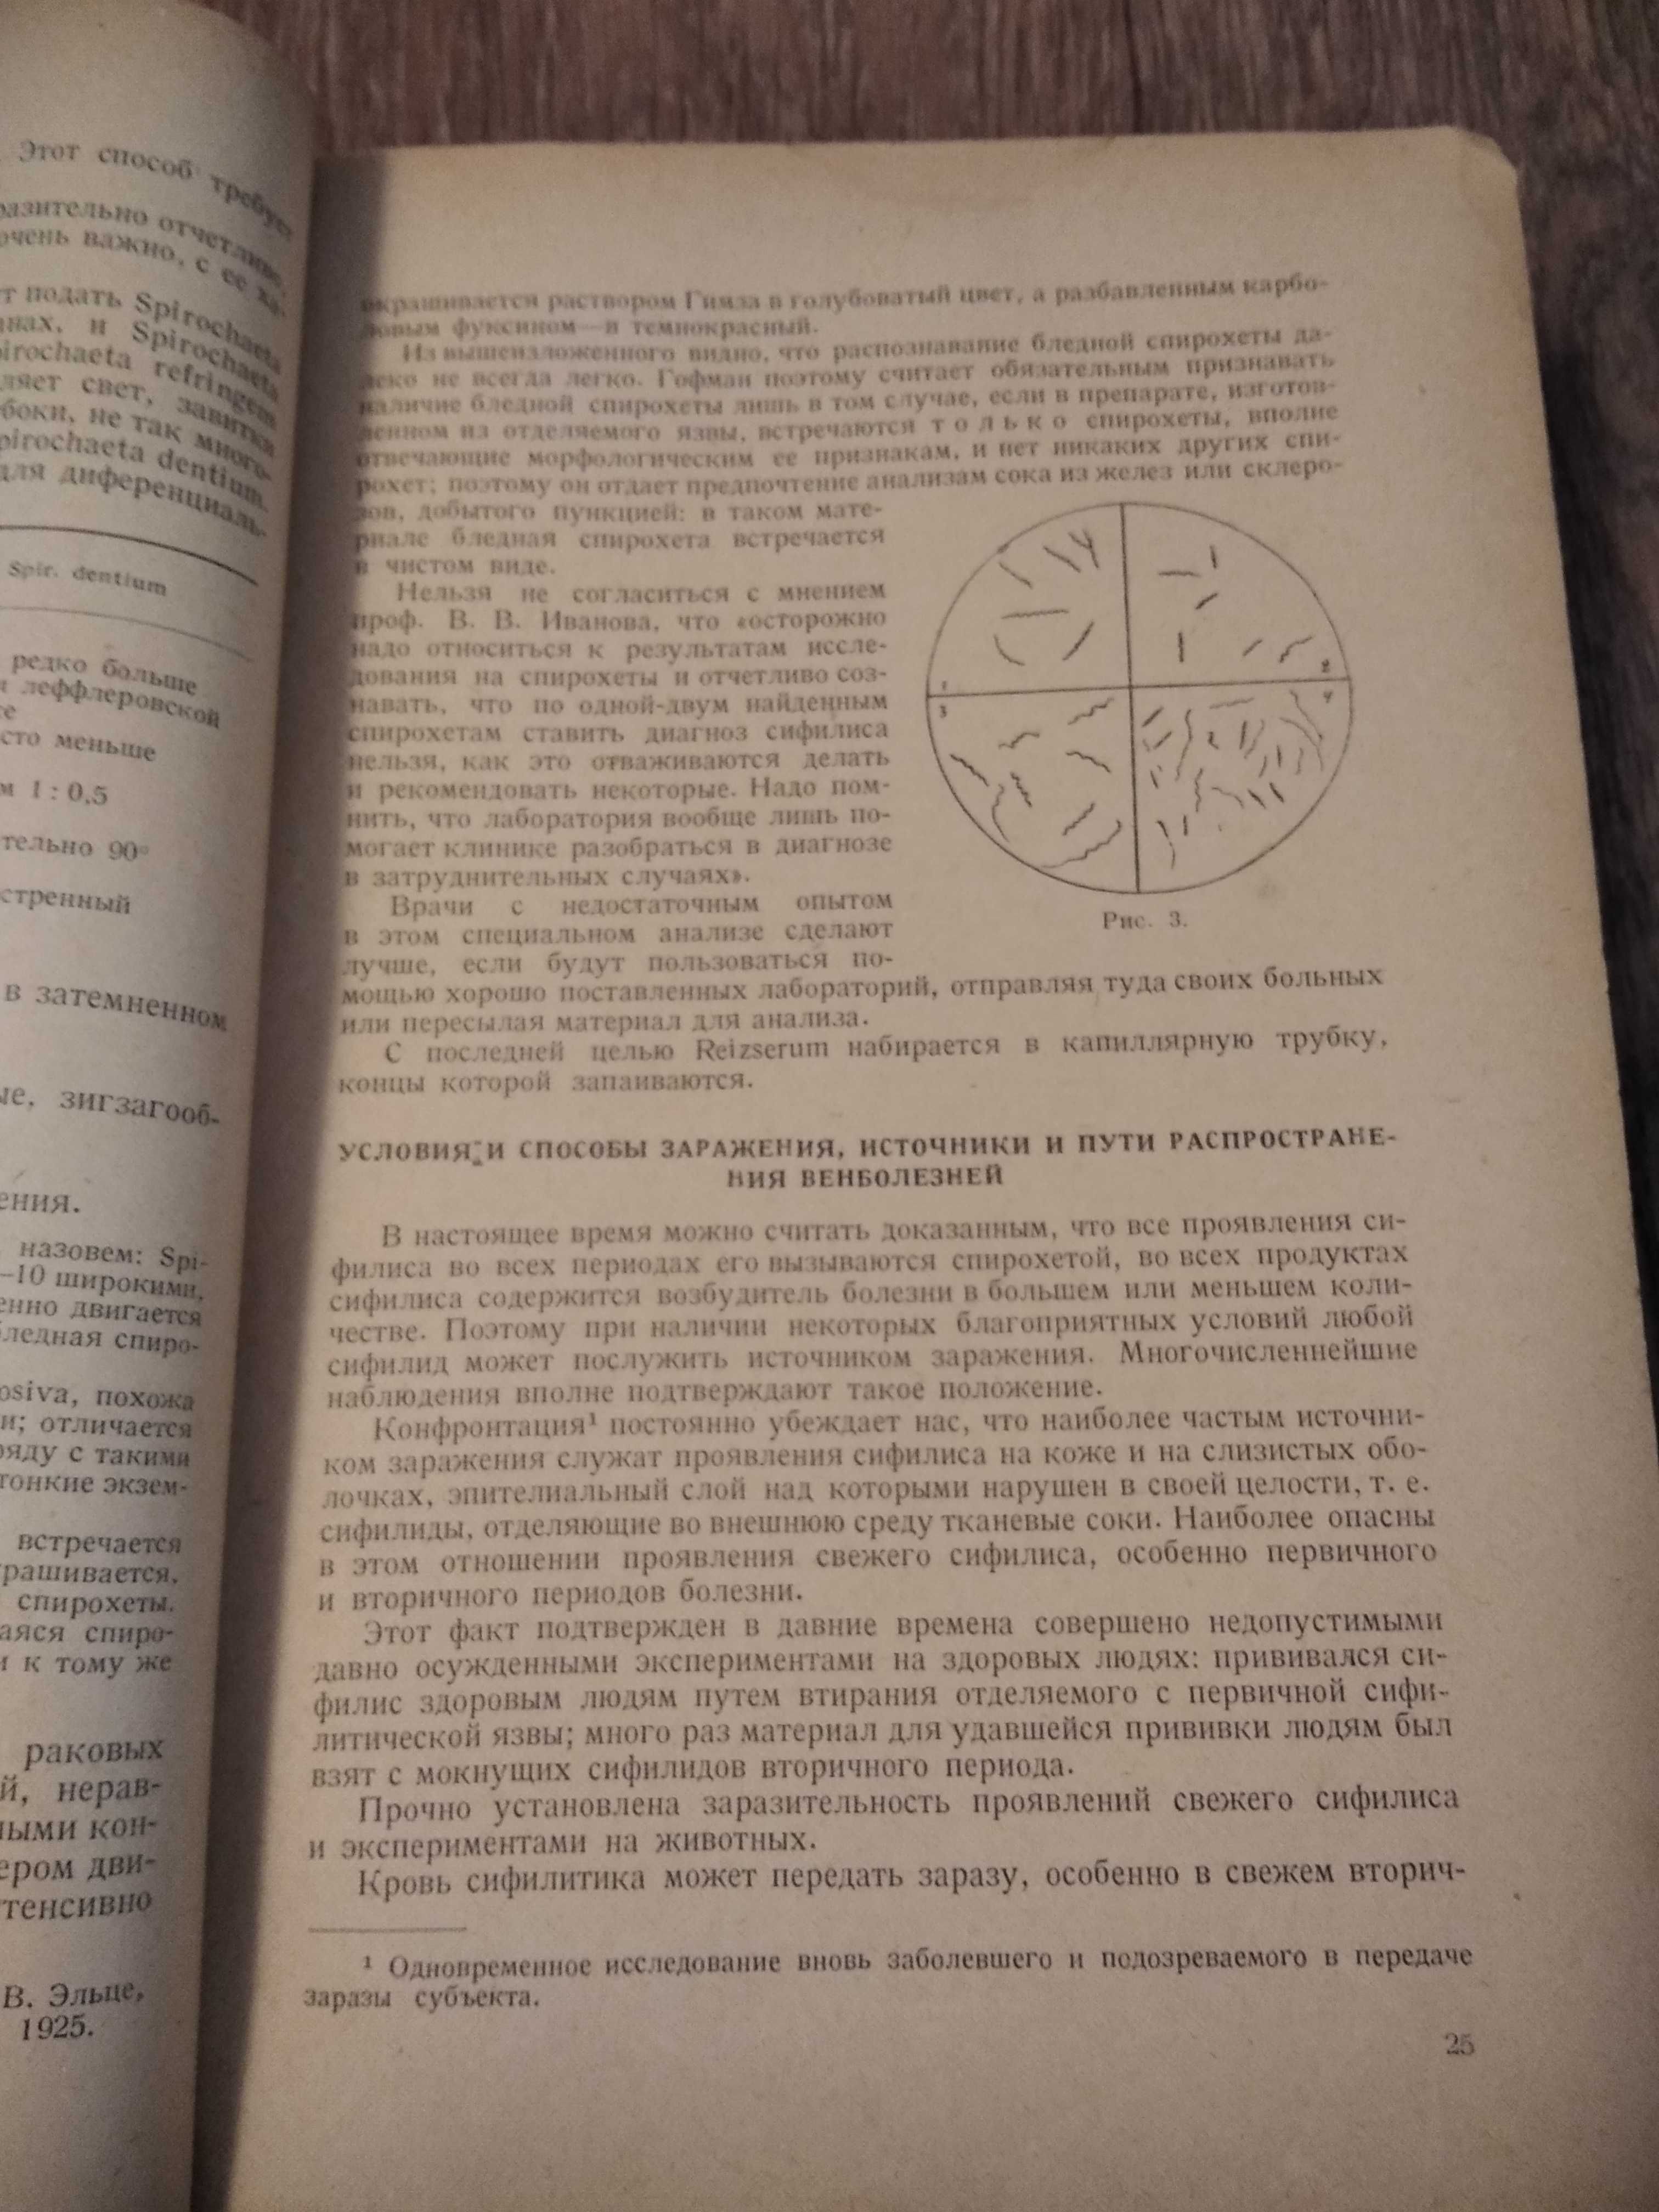 Книга старинная  1938г. Орфографический словарь . І один у полі воїн.